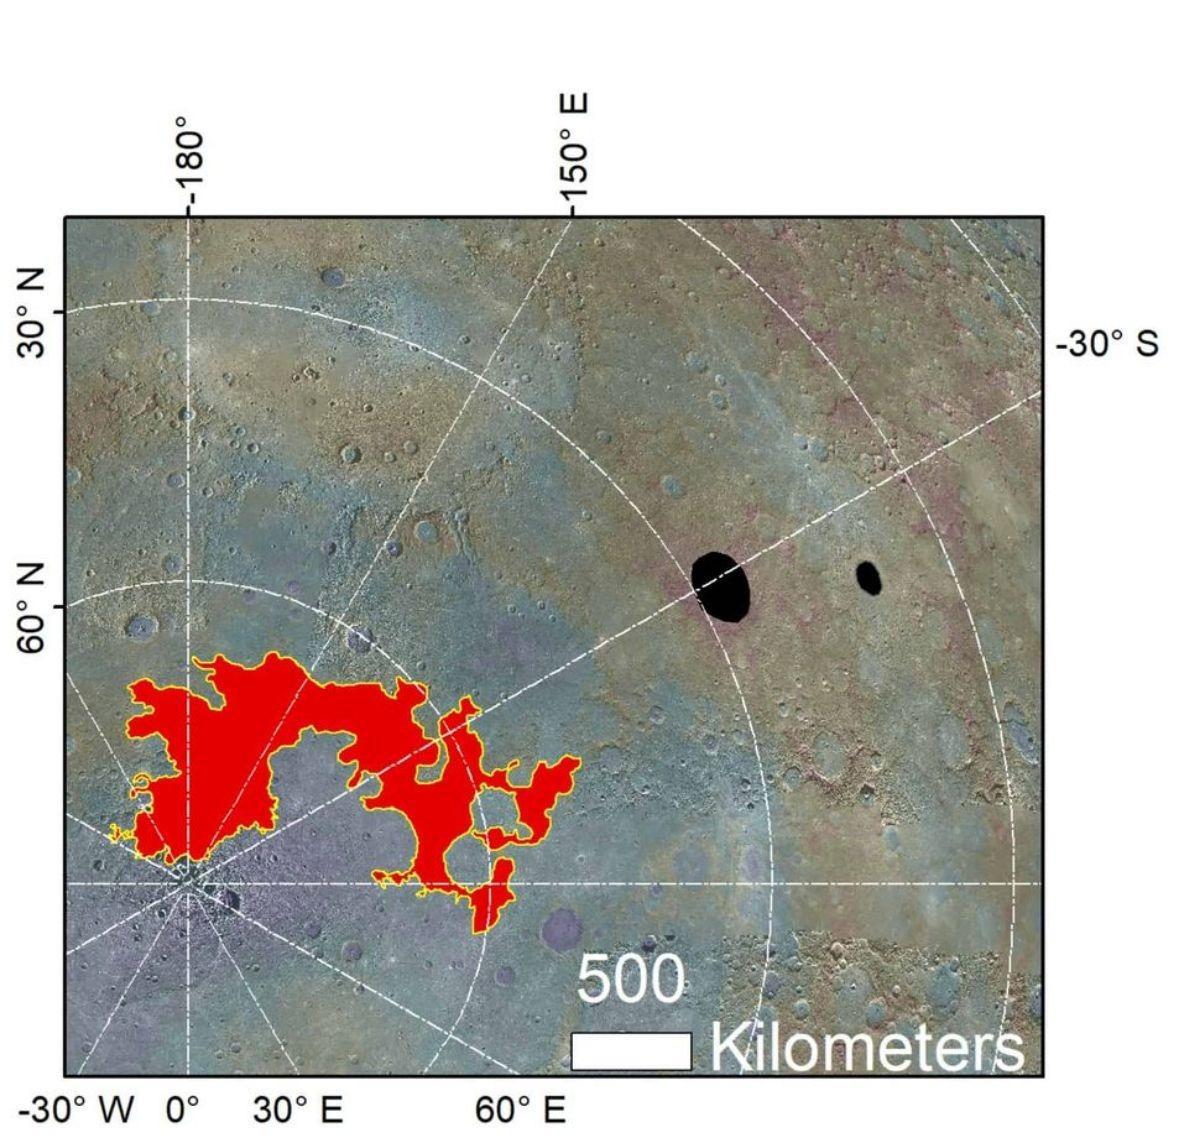 Una vista del terreno caótico del polo norte de Mercurio (Borealis Chaos) y los cráteres Raditladi y Eminescu, donde se han identificado evidencias de posibles glaciares de sal.